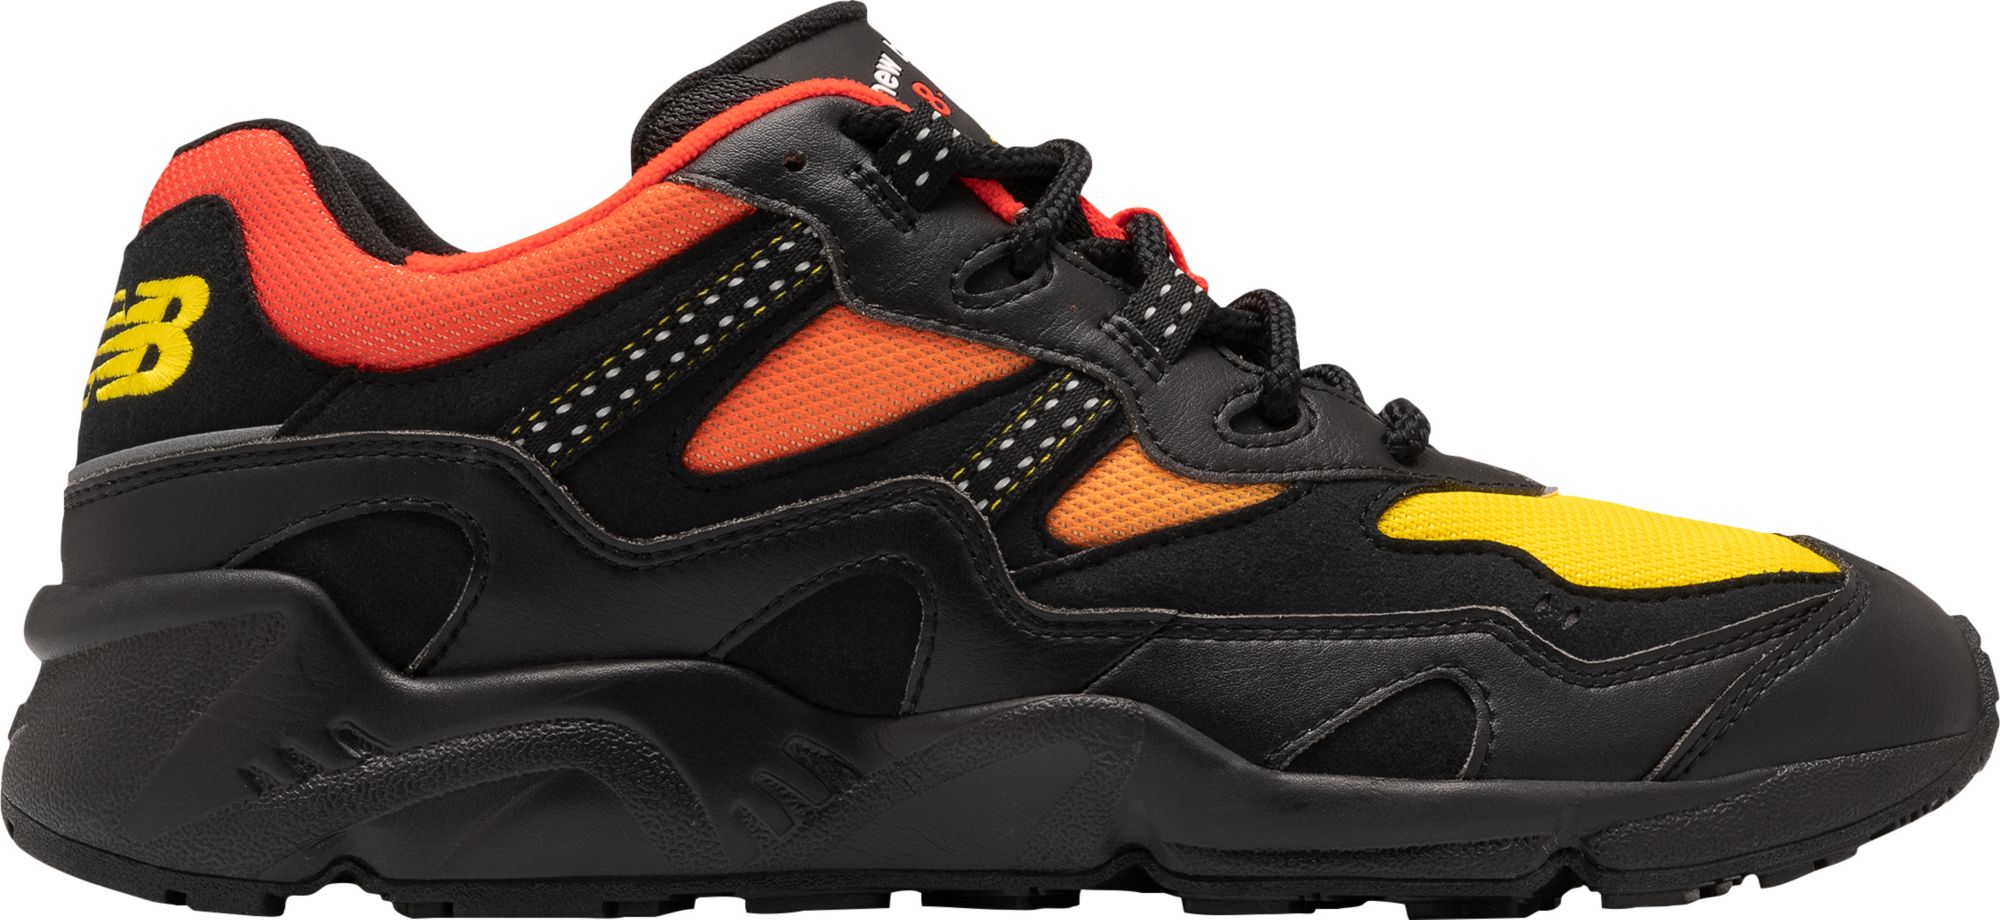 black and orange new balance shoes